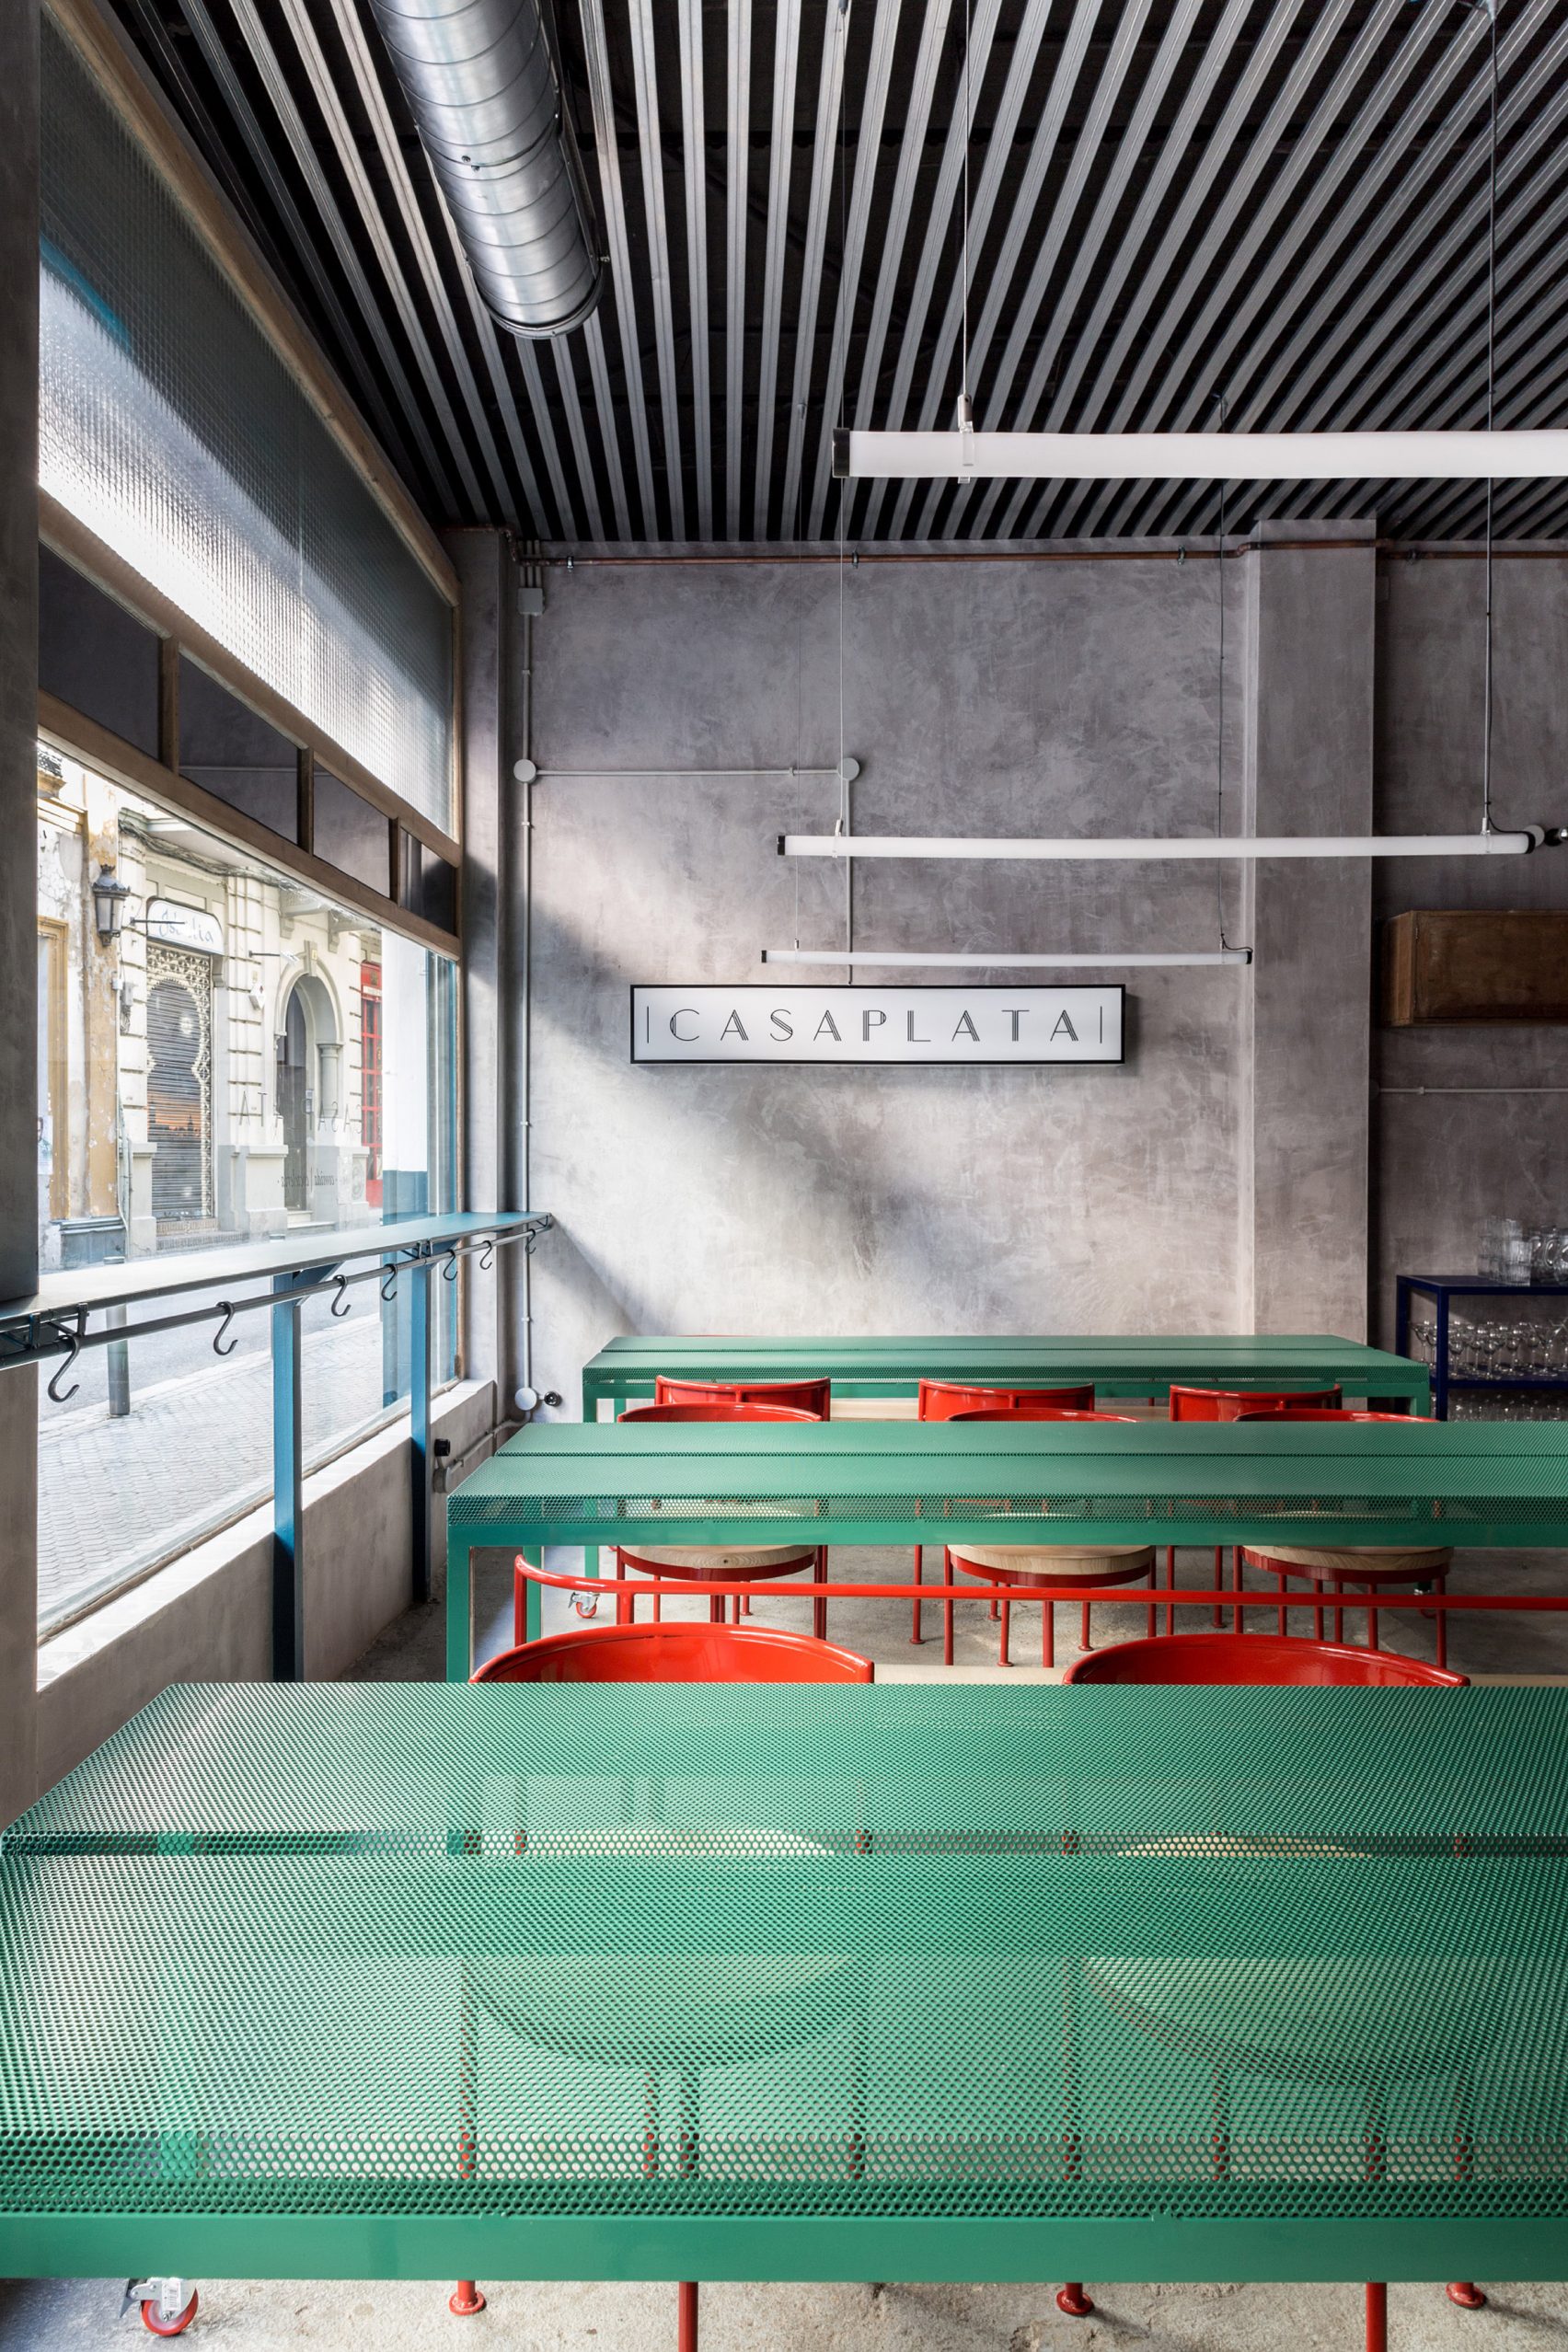 Мебель пастельных тонов контрастирует с бетонными стенами в ресторане «Casaplata» в Севильи